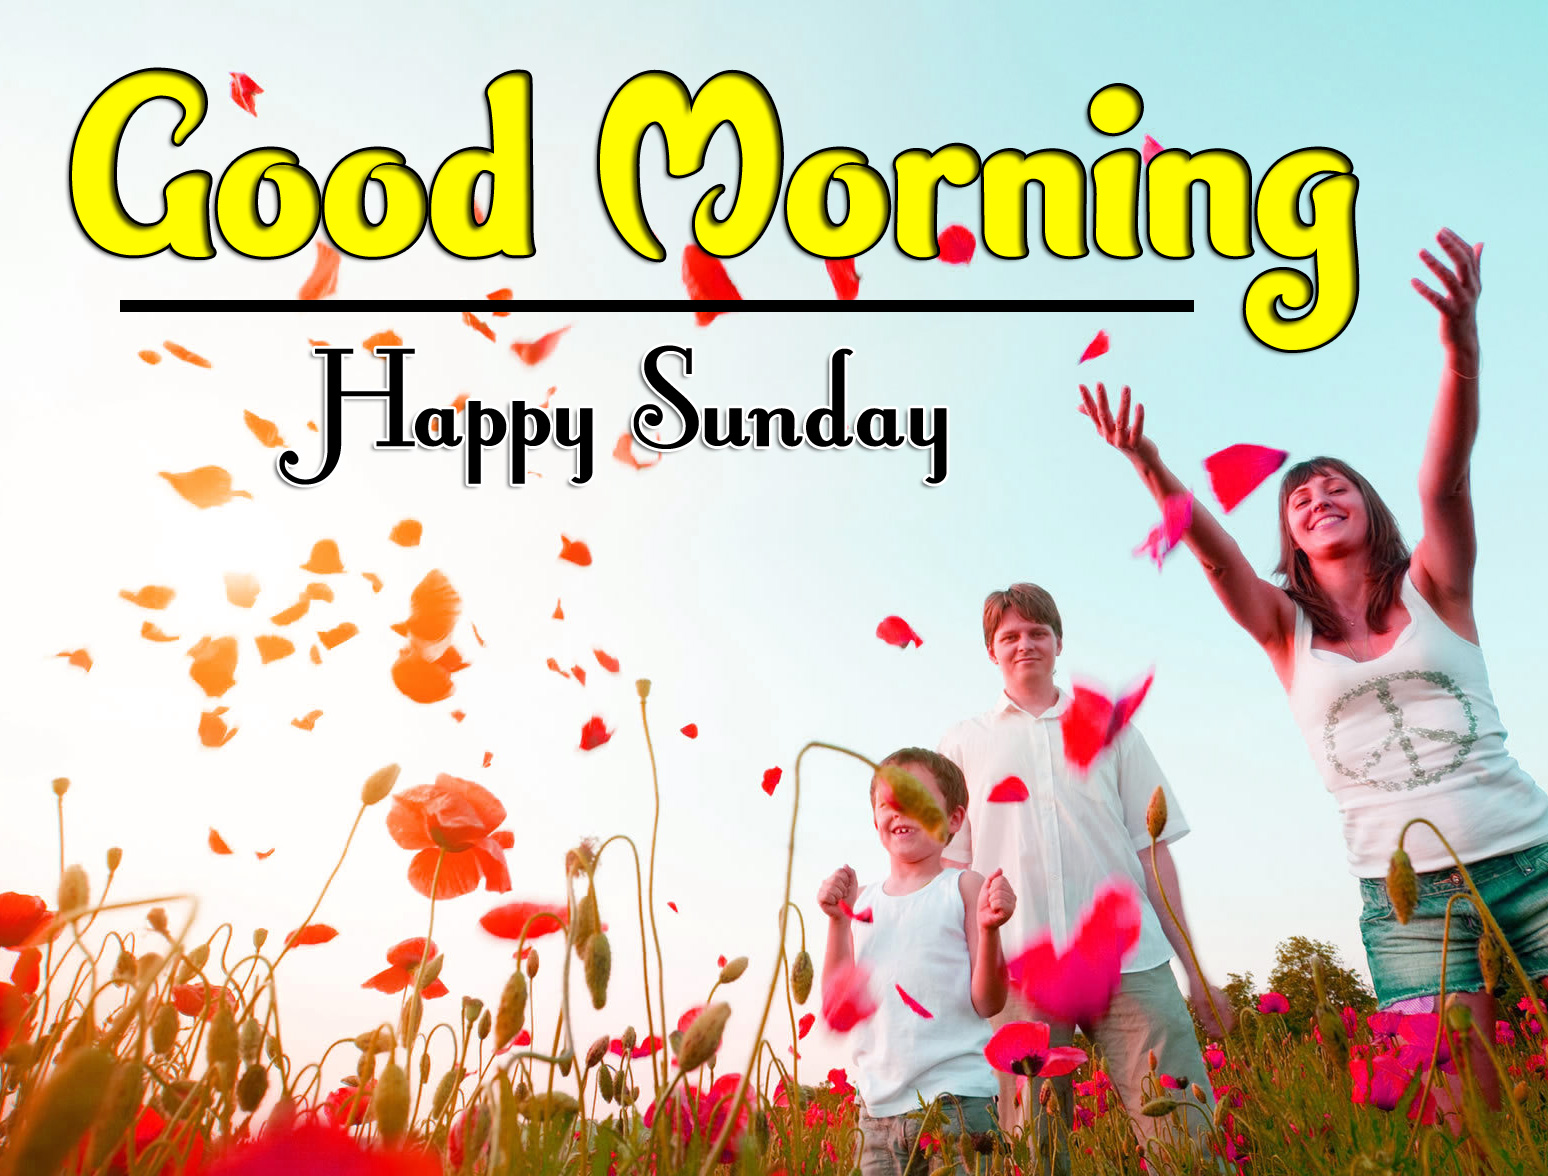 Sunday Good Morning Wishes (3) – Good Morning Images | Good ...